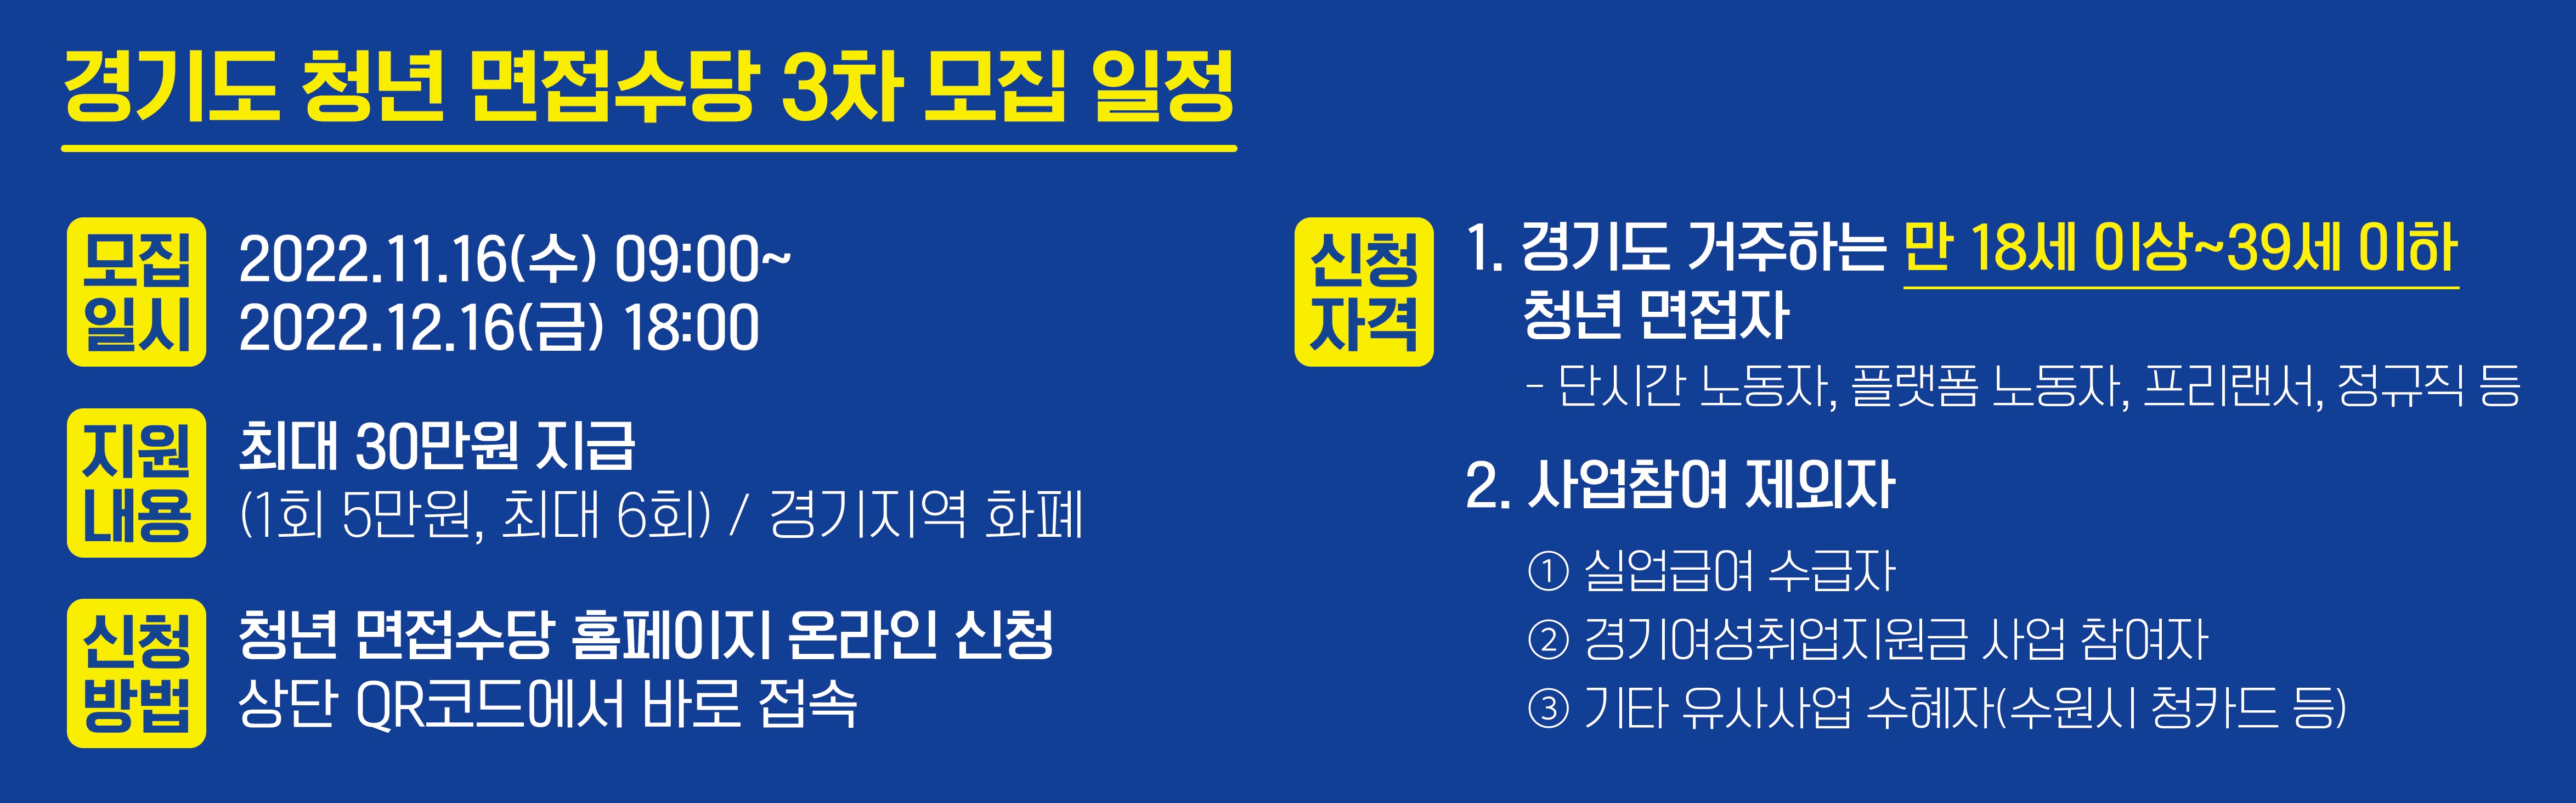 경기도 청년면접수당 3차 모집 일정.